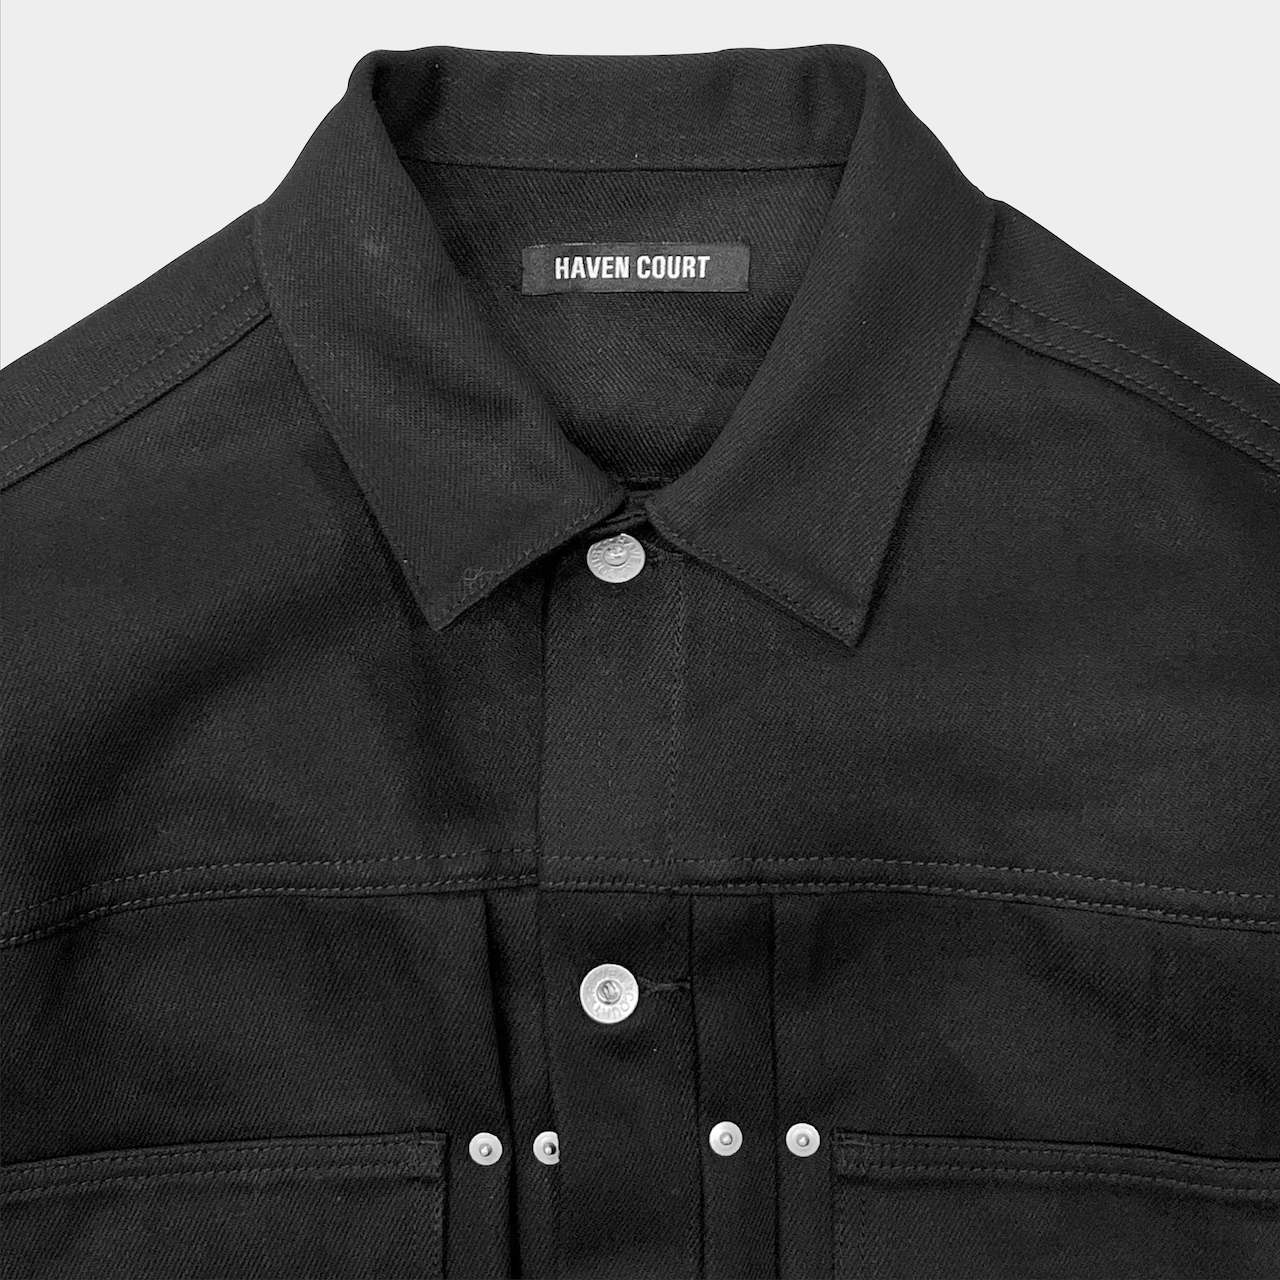 Black Raw Type II Jacket